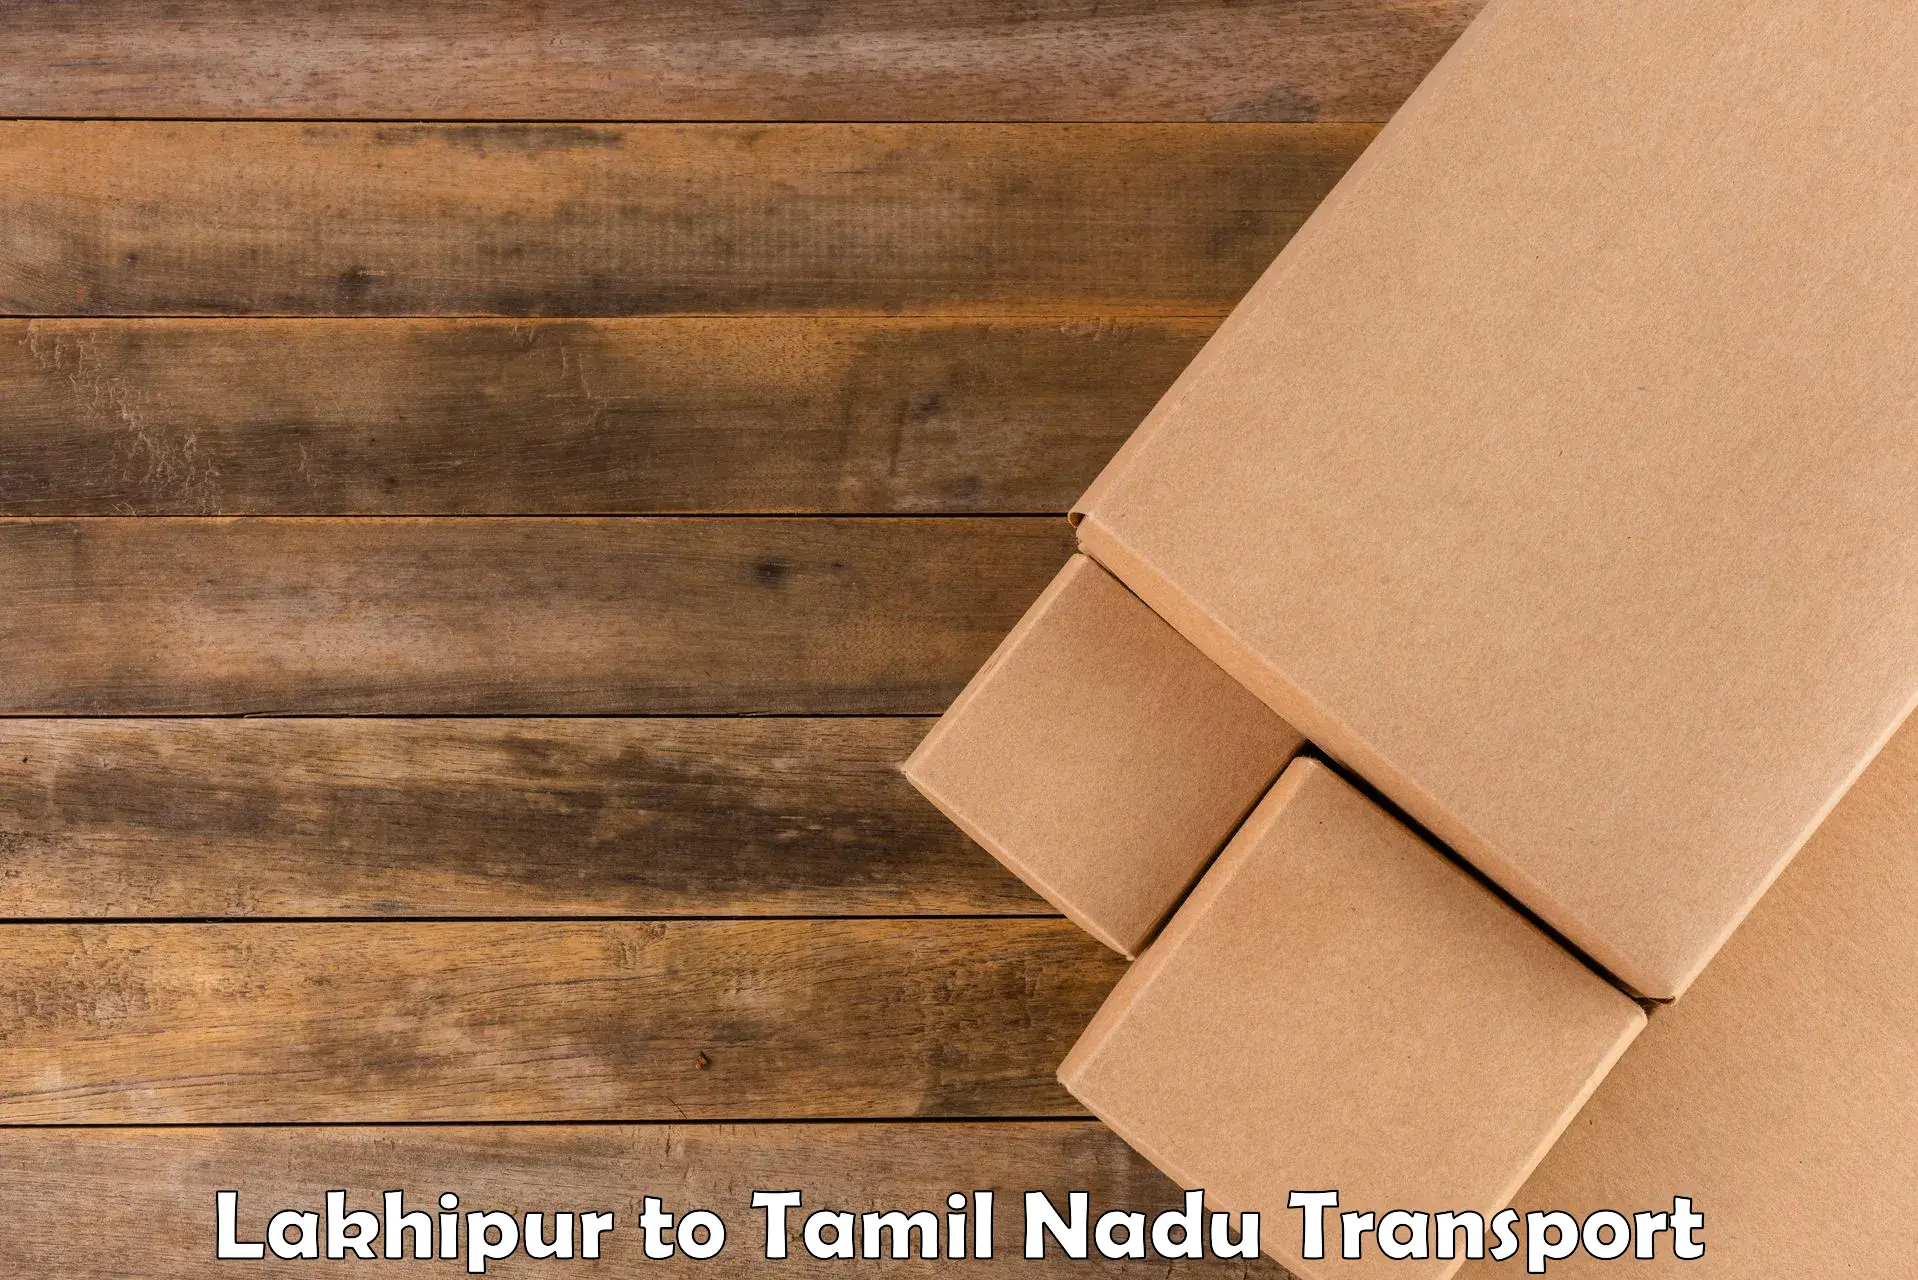 Shipping partner Lakhipur to IIIT Tiruchirappalli